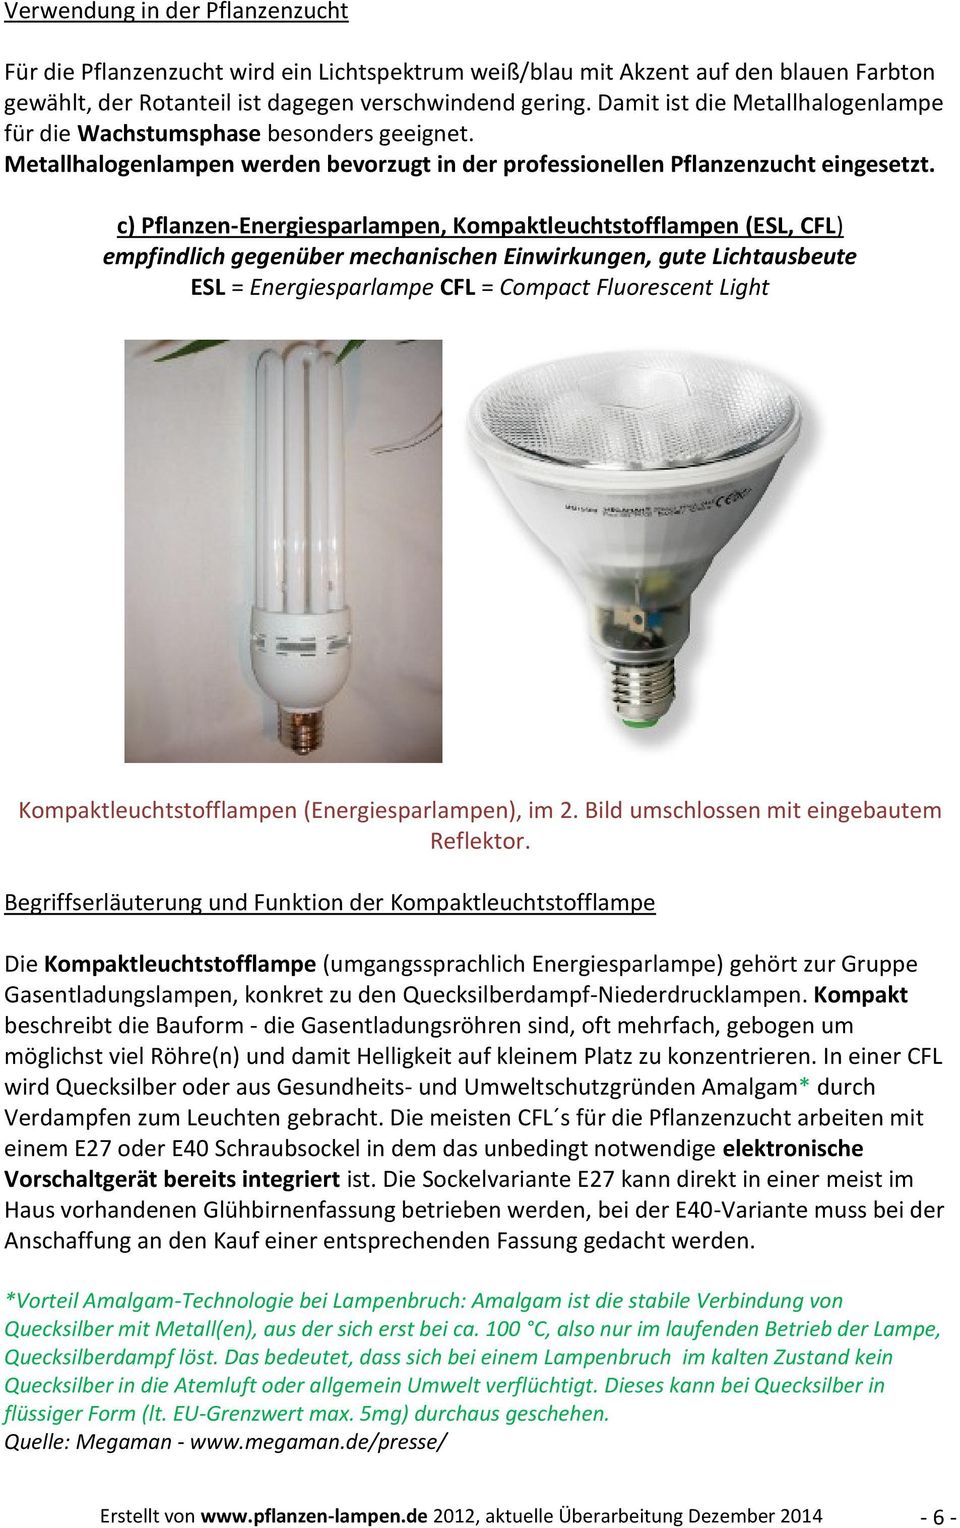 c) Pflanzen-Energiesparlampen, Kompaktleuchtstofflampen (ESL, CFL) empfindlich gegenüber mechanischen Einwirkungen, gute Lichtausbeute ESL = Energiesparlampe CFL = Compact Fluorescent Light